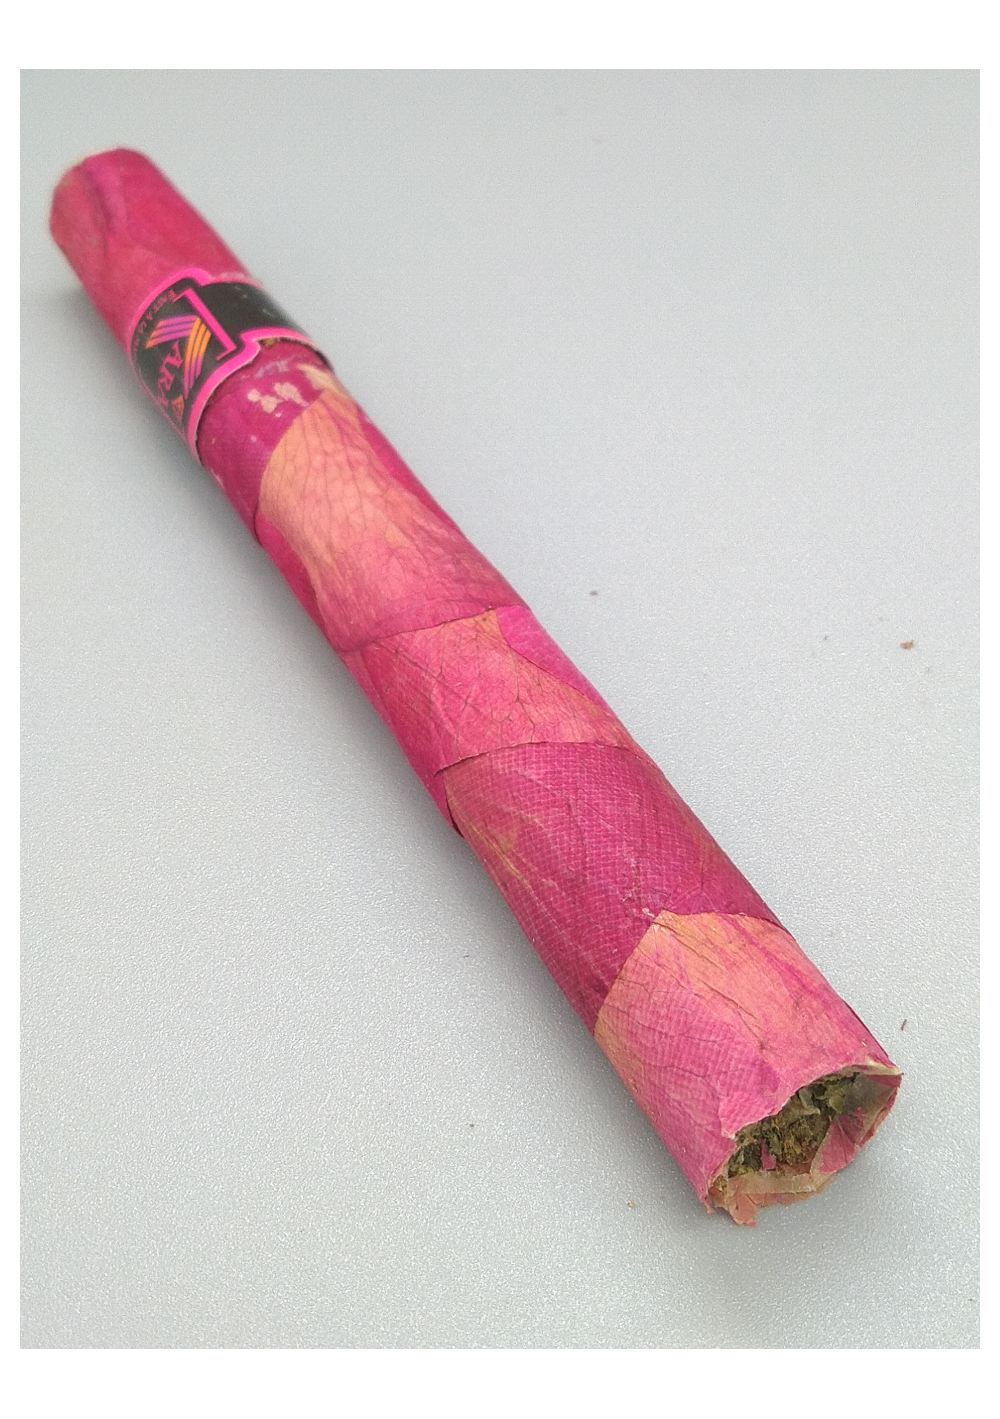 Cigarillo Blunt Petali di Rosa 2gr - Sigaro di Cannabis CBD avvolto in Blunt di Petali di Rose - Cannabis Light